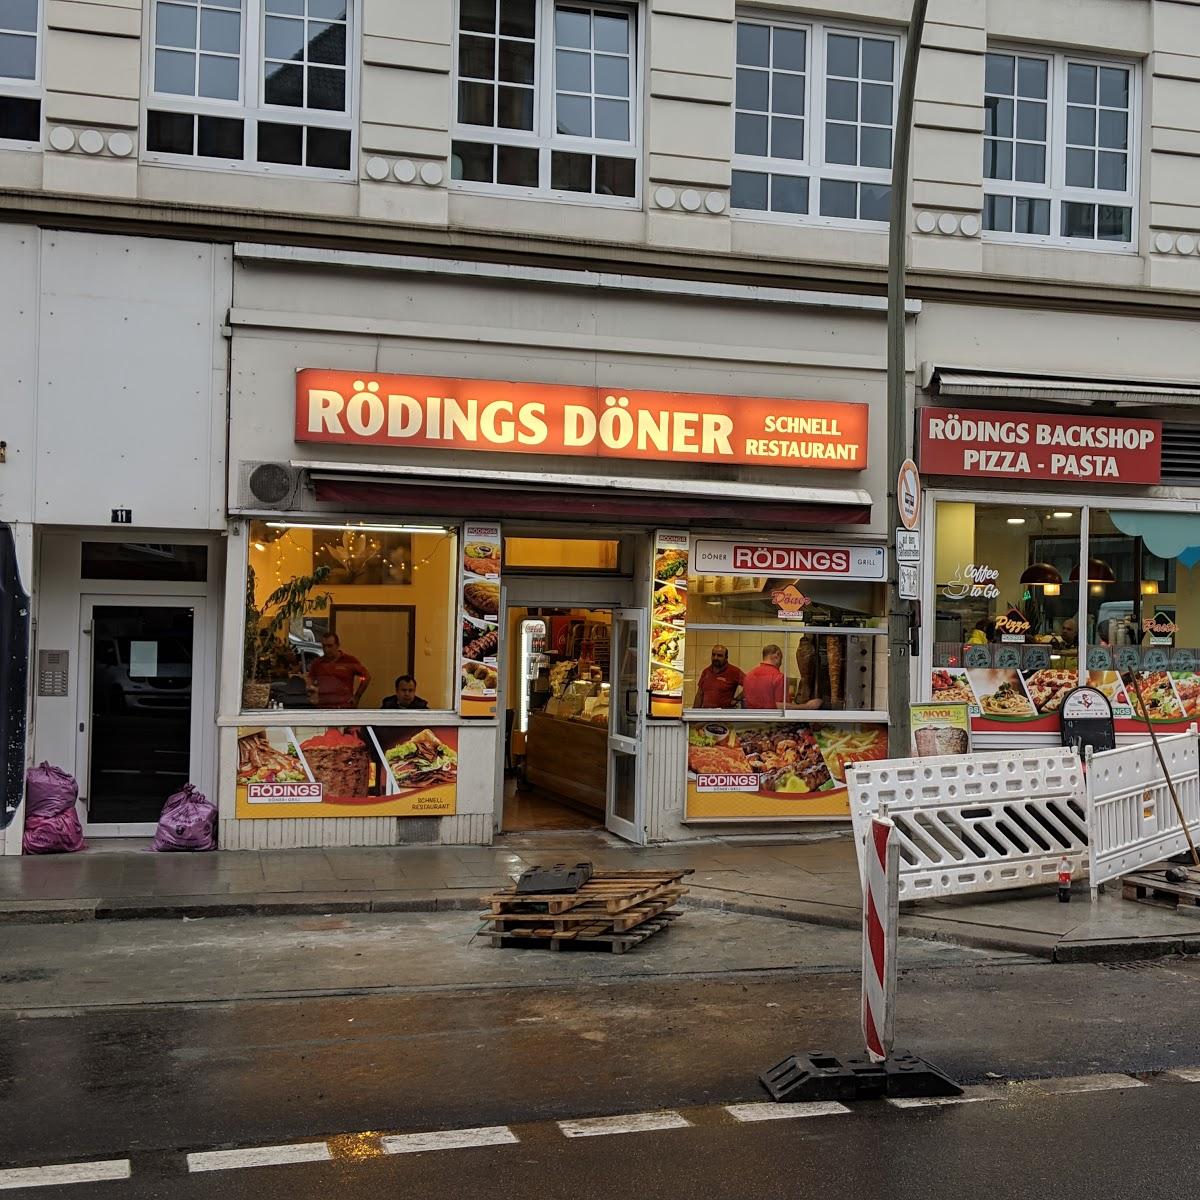 Restaurant "Rödings Döner" in Hamburg